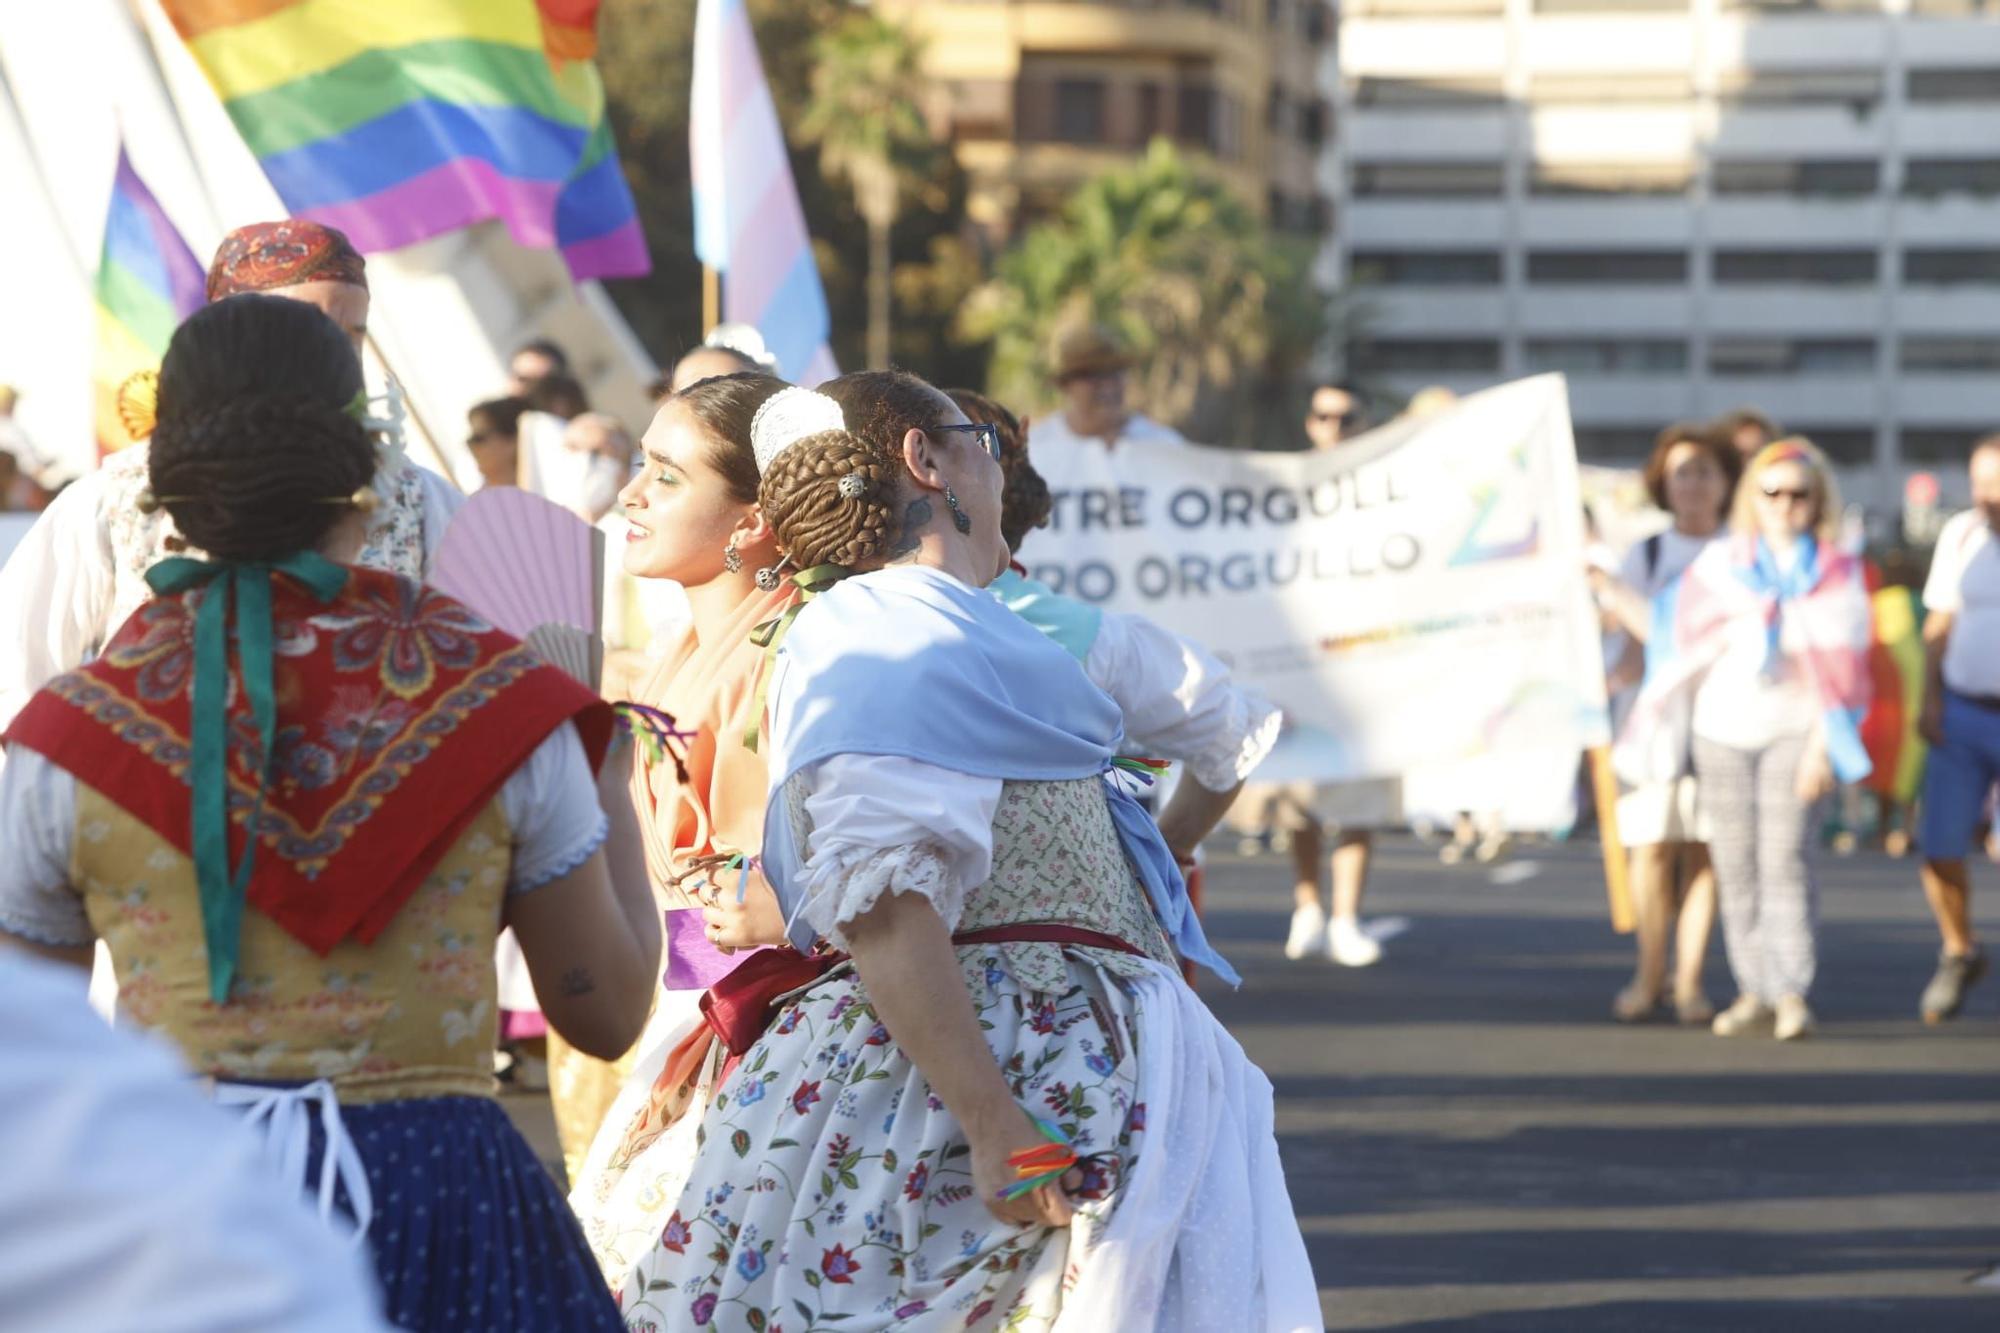 Manifestación del Orgullo LGTBI+ 2022 en València